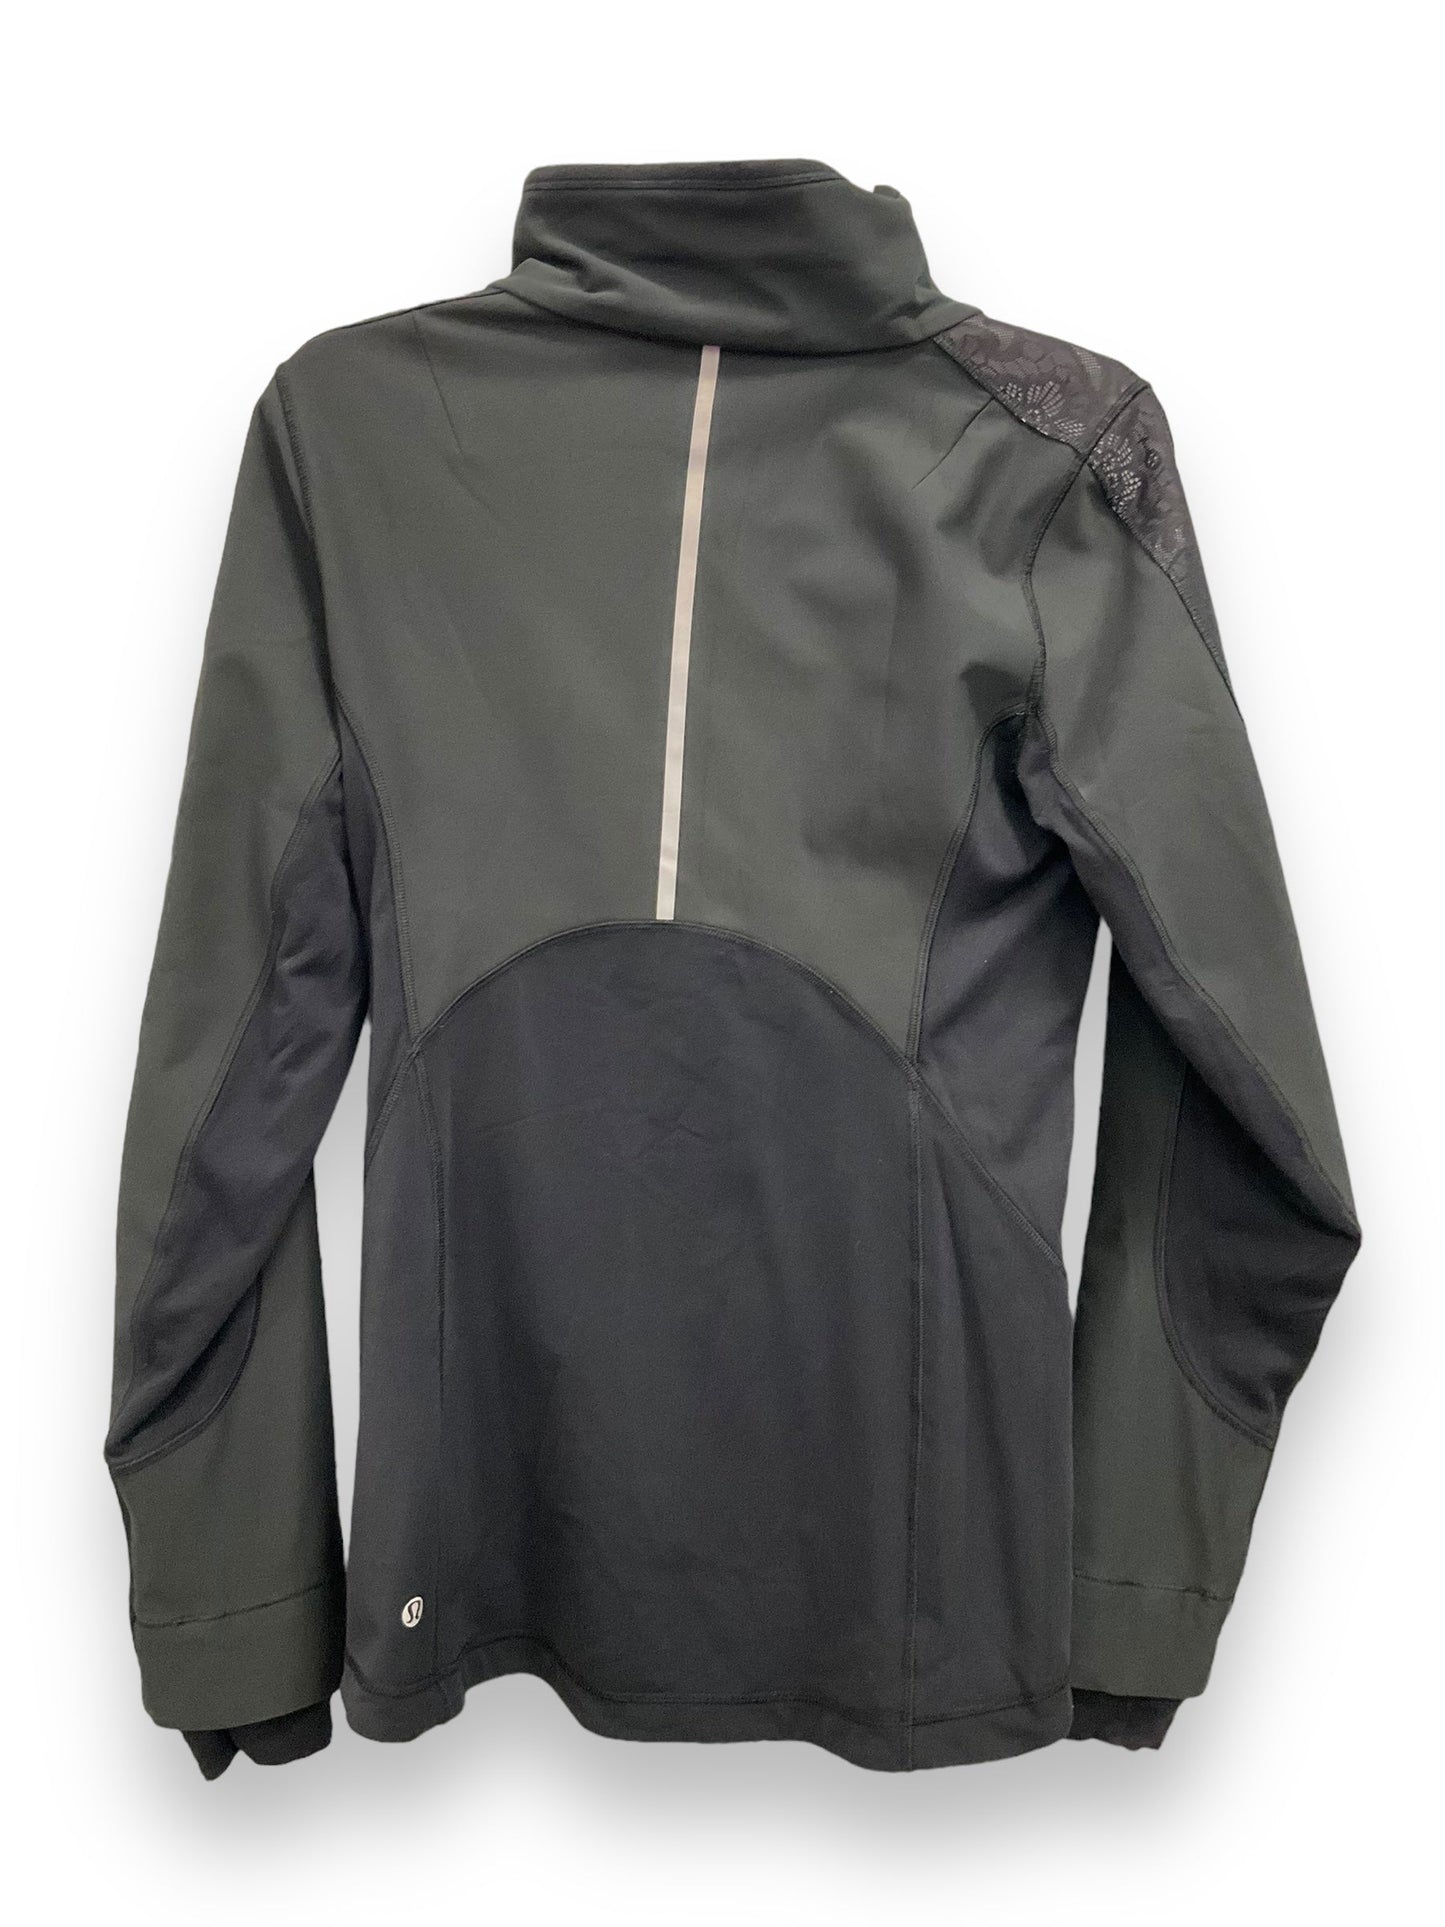 Black Athletic Jacket Lululemon, Size 6